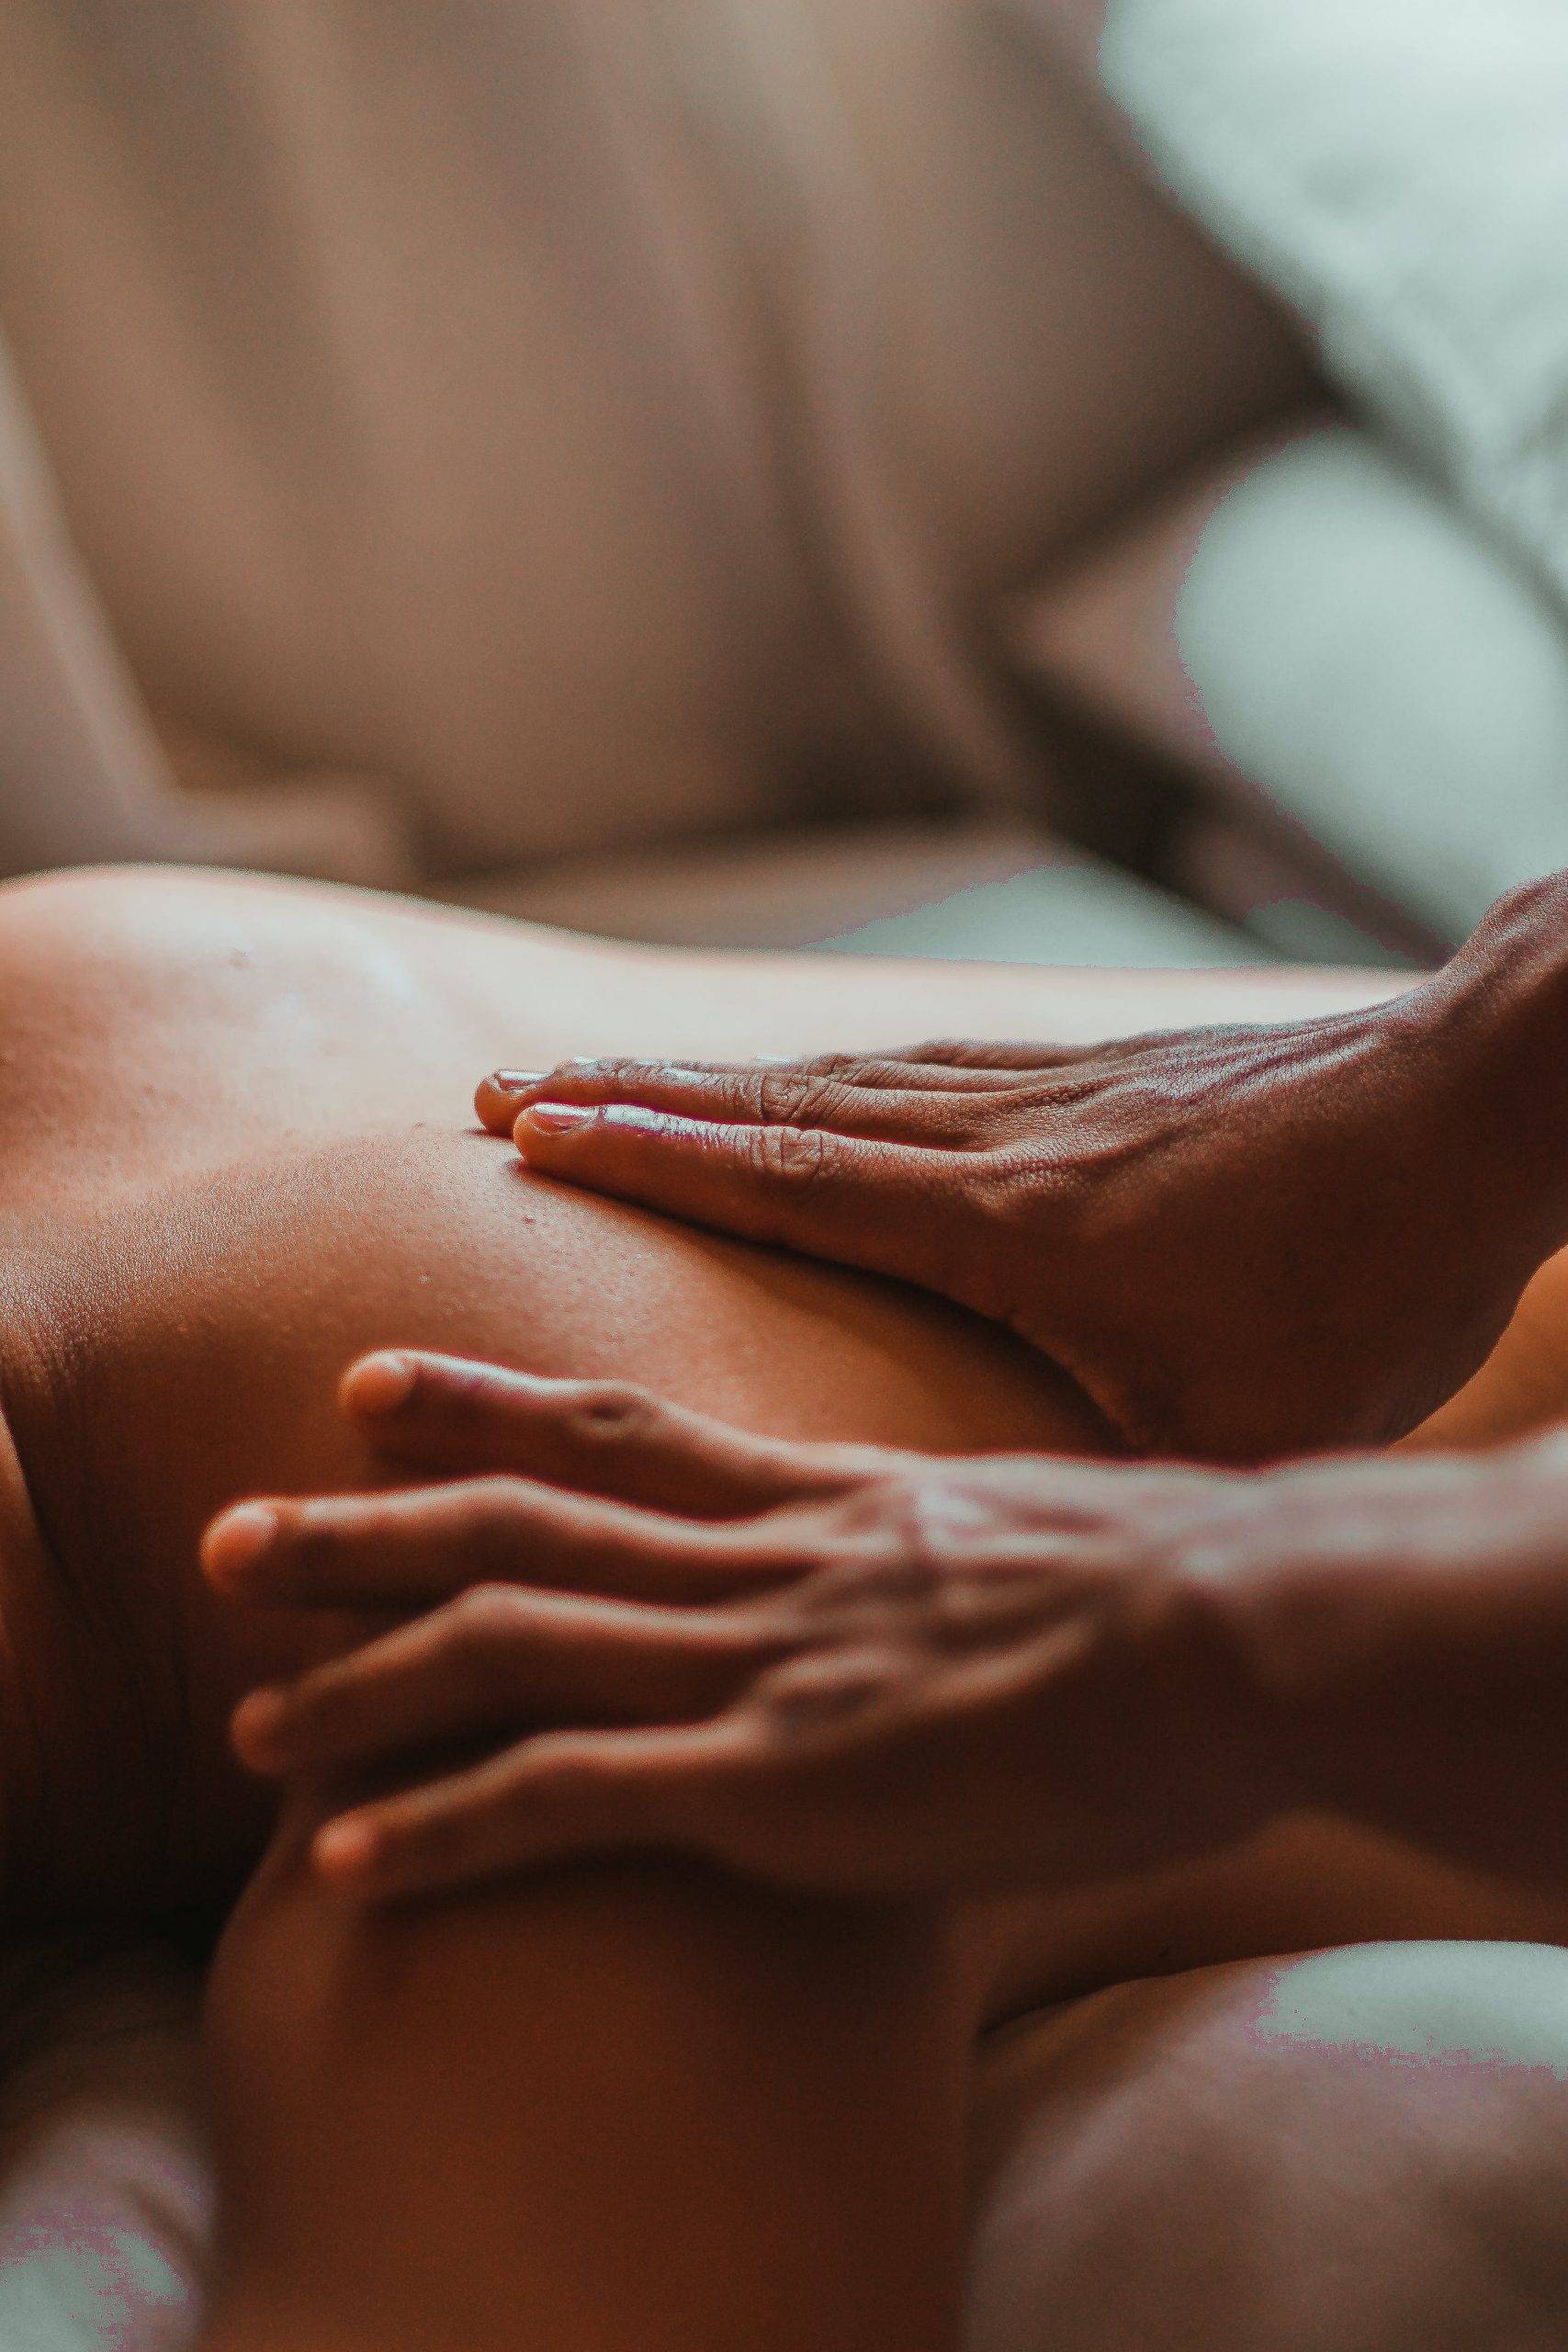 massages tantriques pour retrouver la sensualité perdue